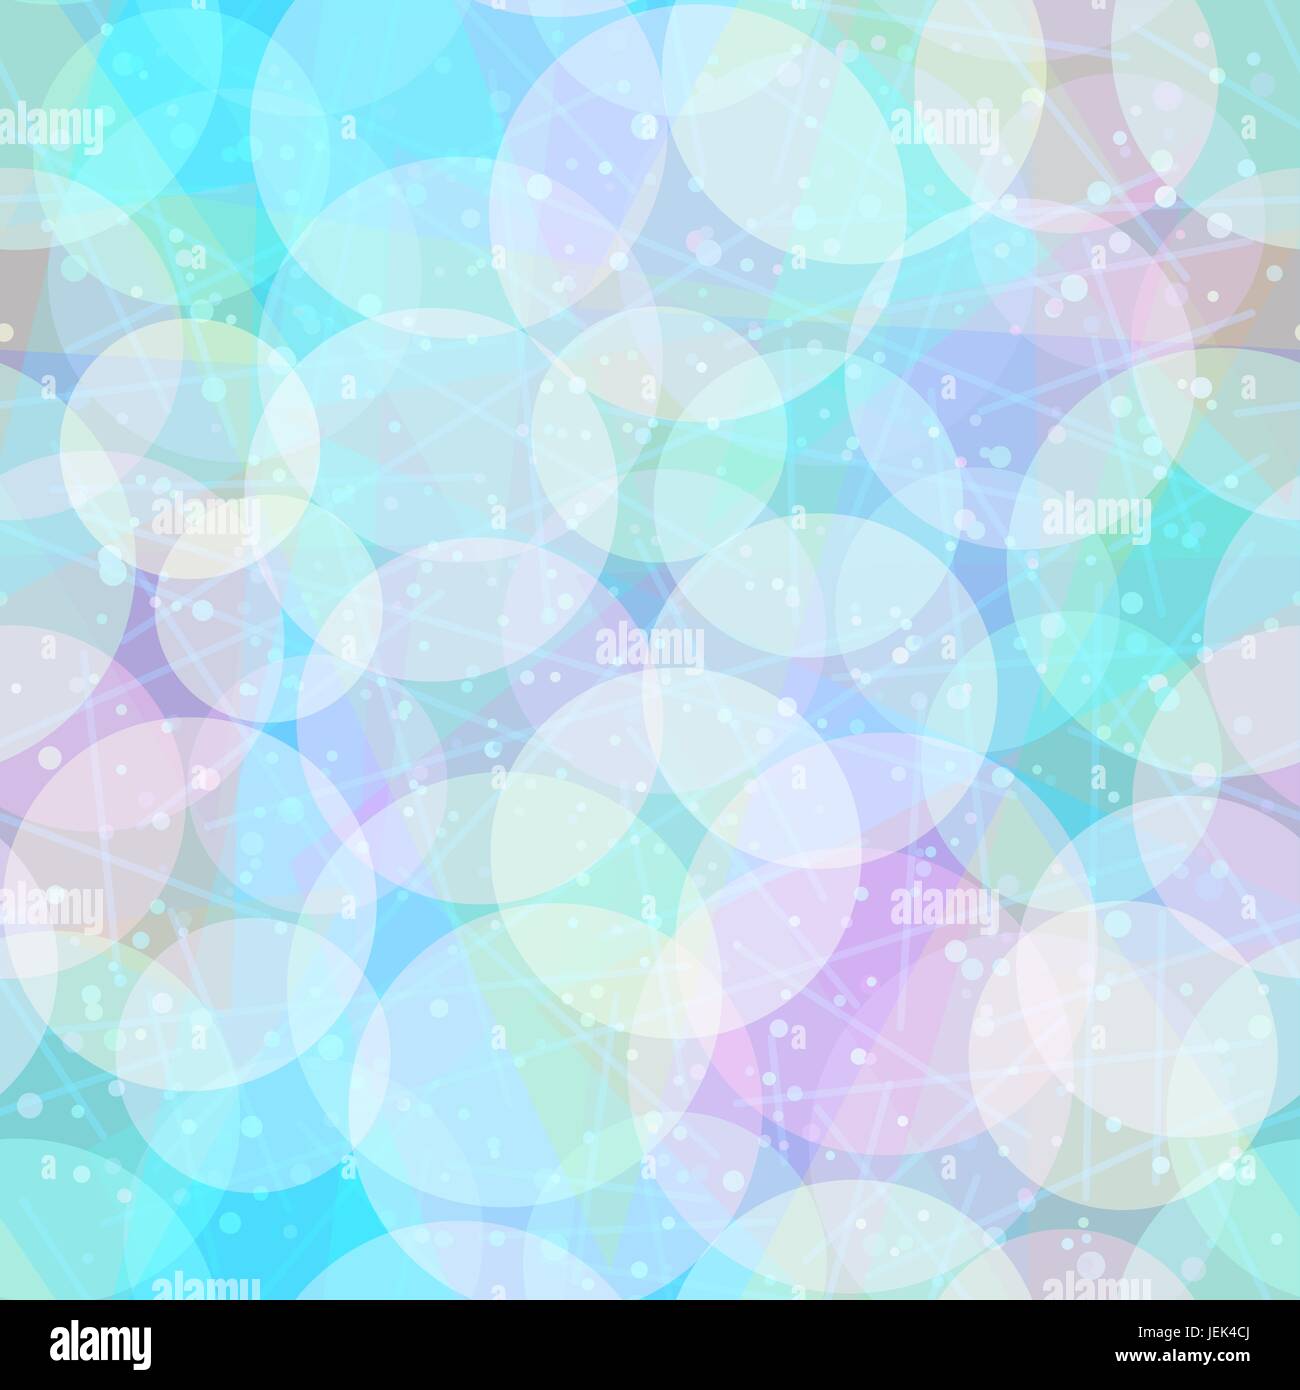 Seamless Abstract Sfondo piastrelle e colorati di figure geometriche, cerchi e anelli. Eps10, contiene i lucidi. Vettore Illustrazione Vettoriale